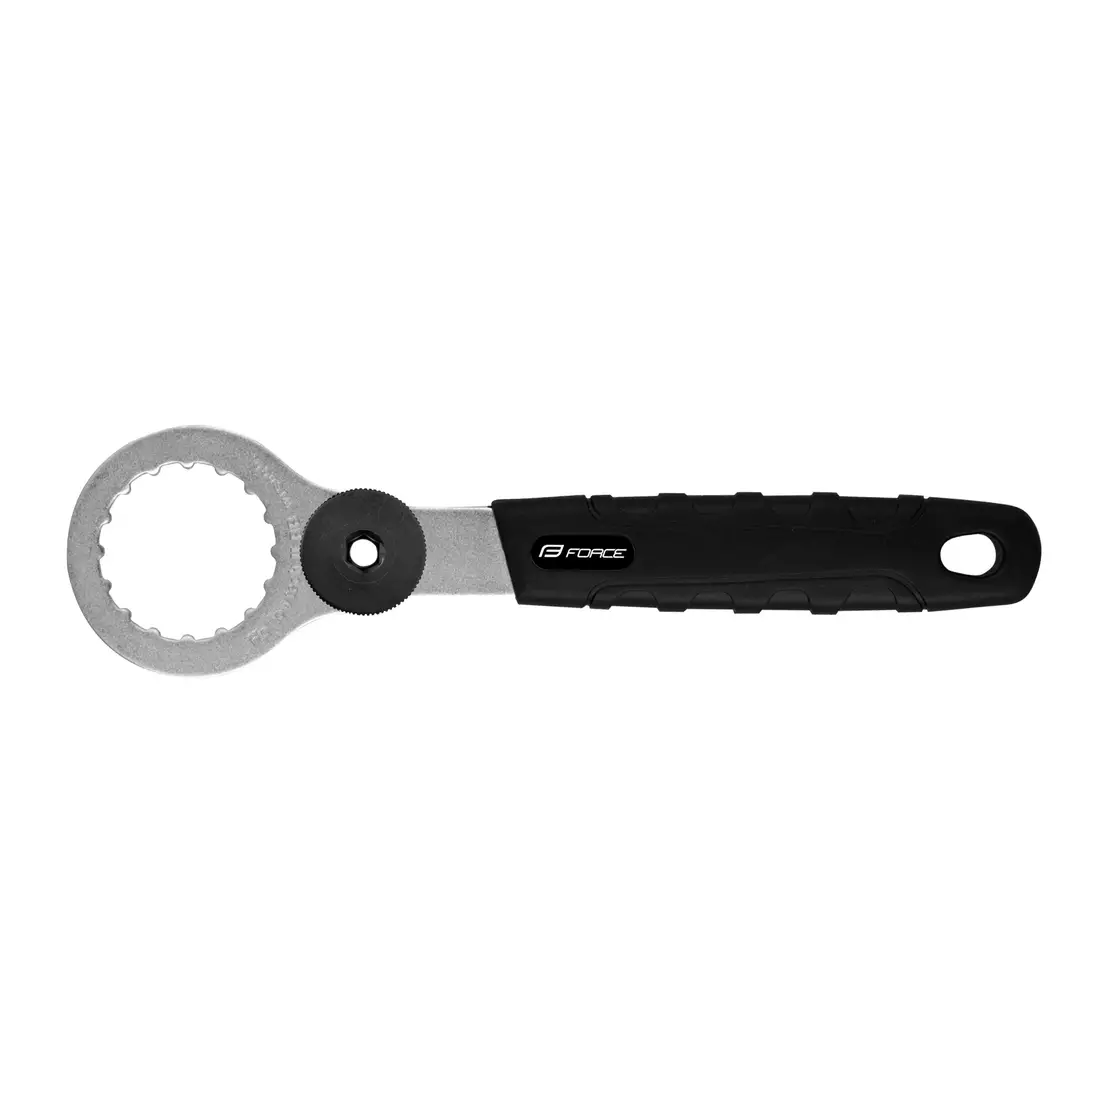 FORCE key for Shimano Hollowtech II 89511